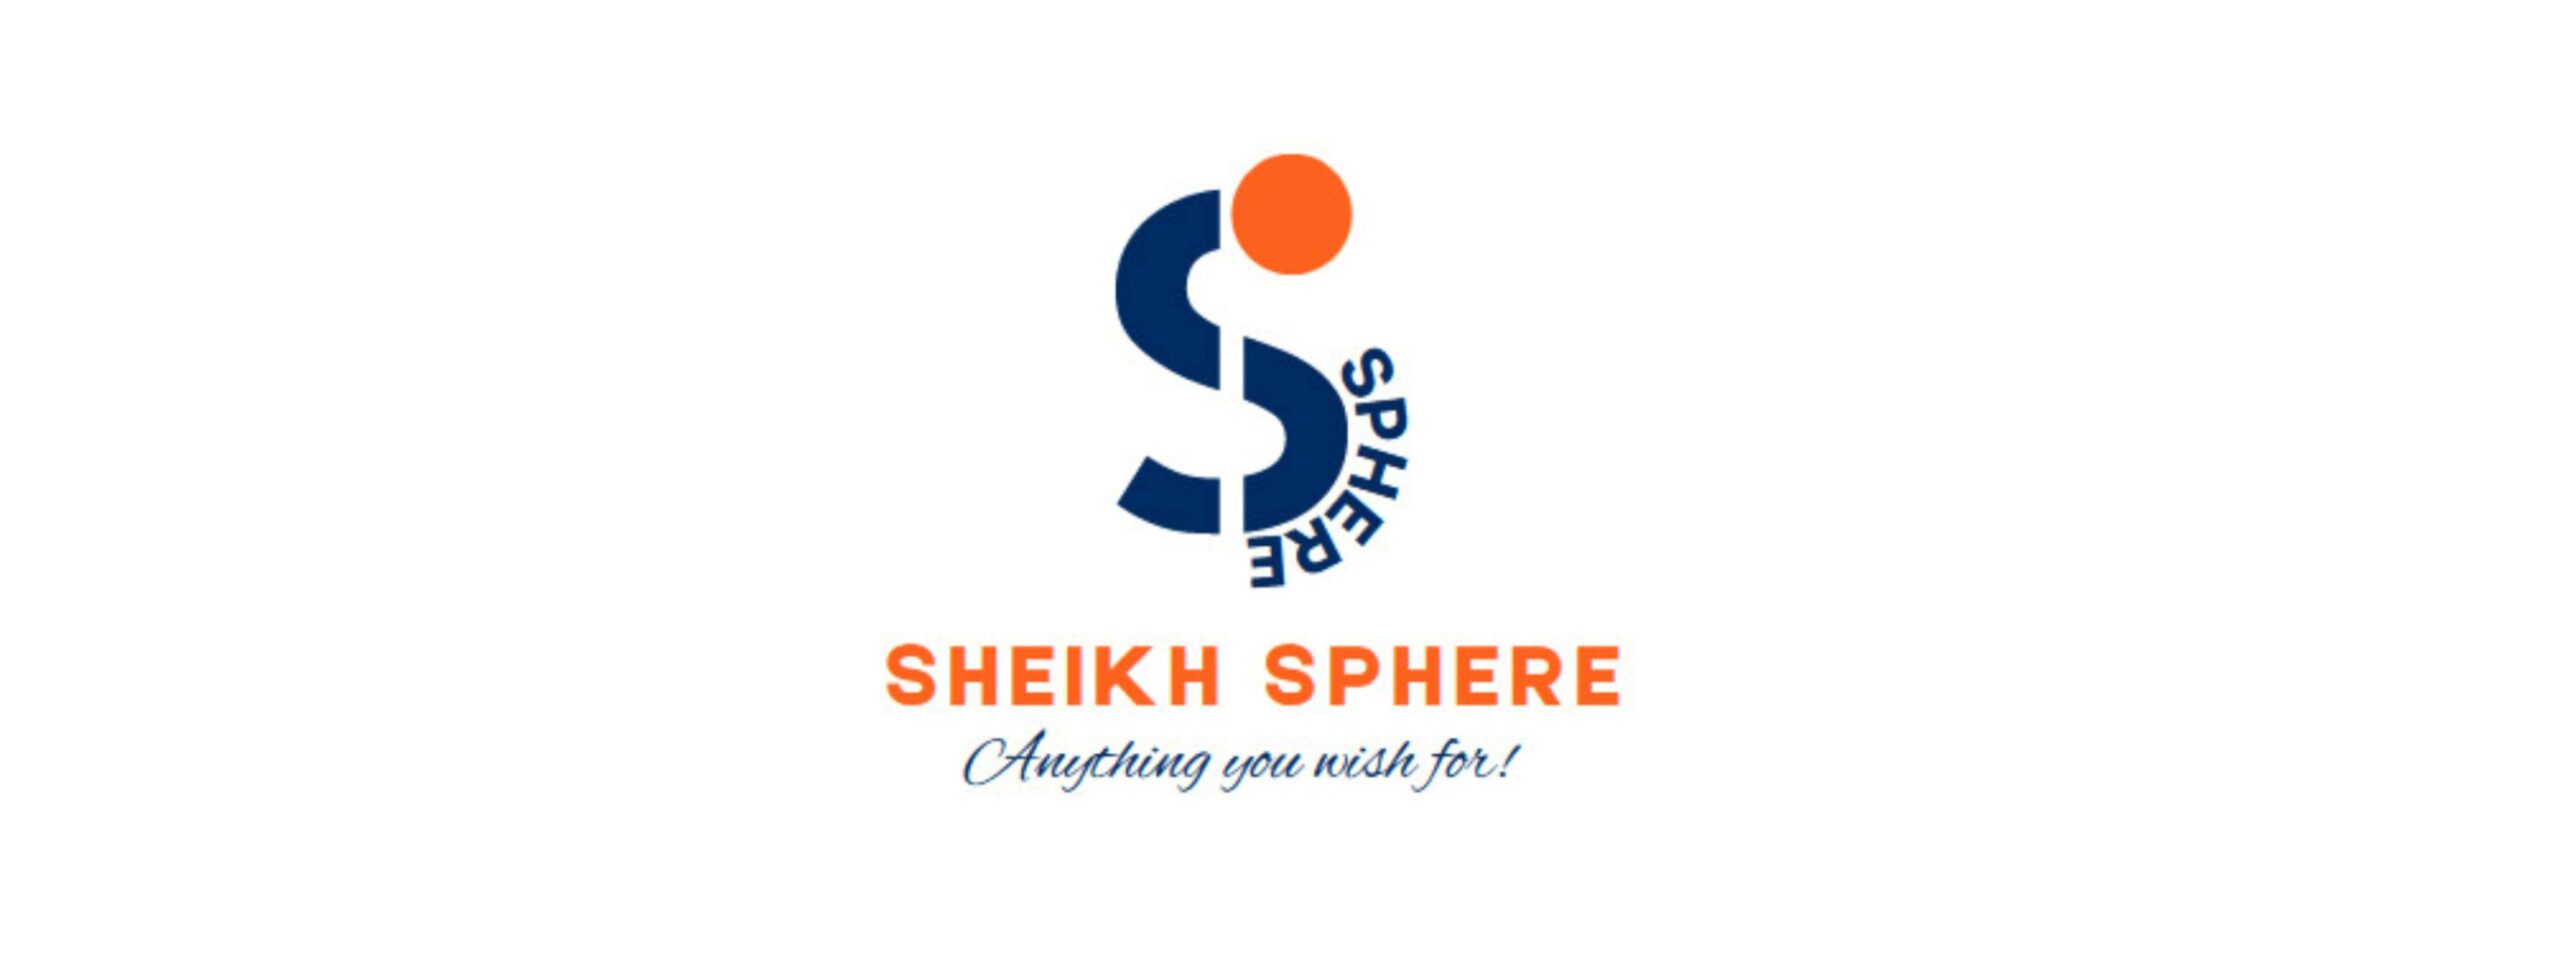 Sheikh Sphere